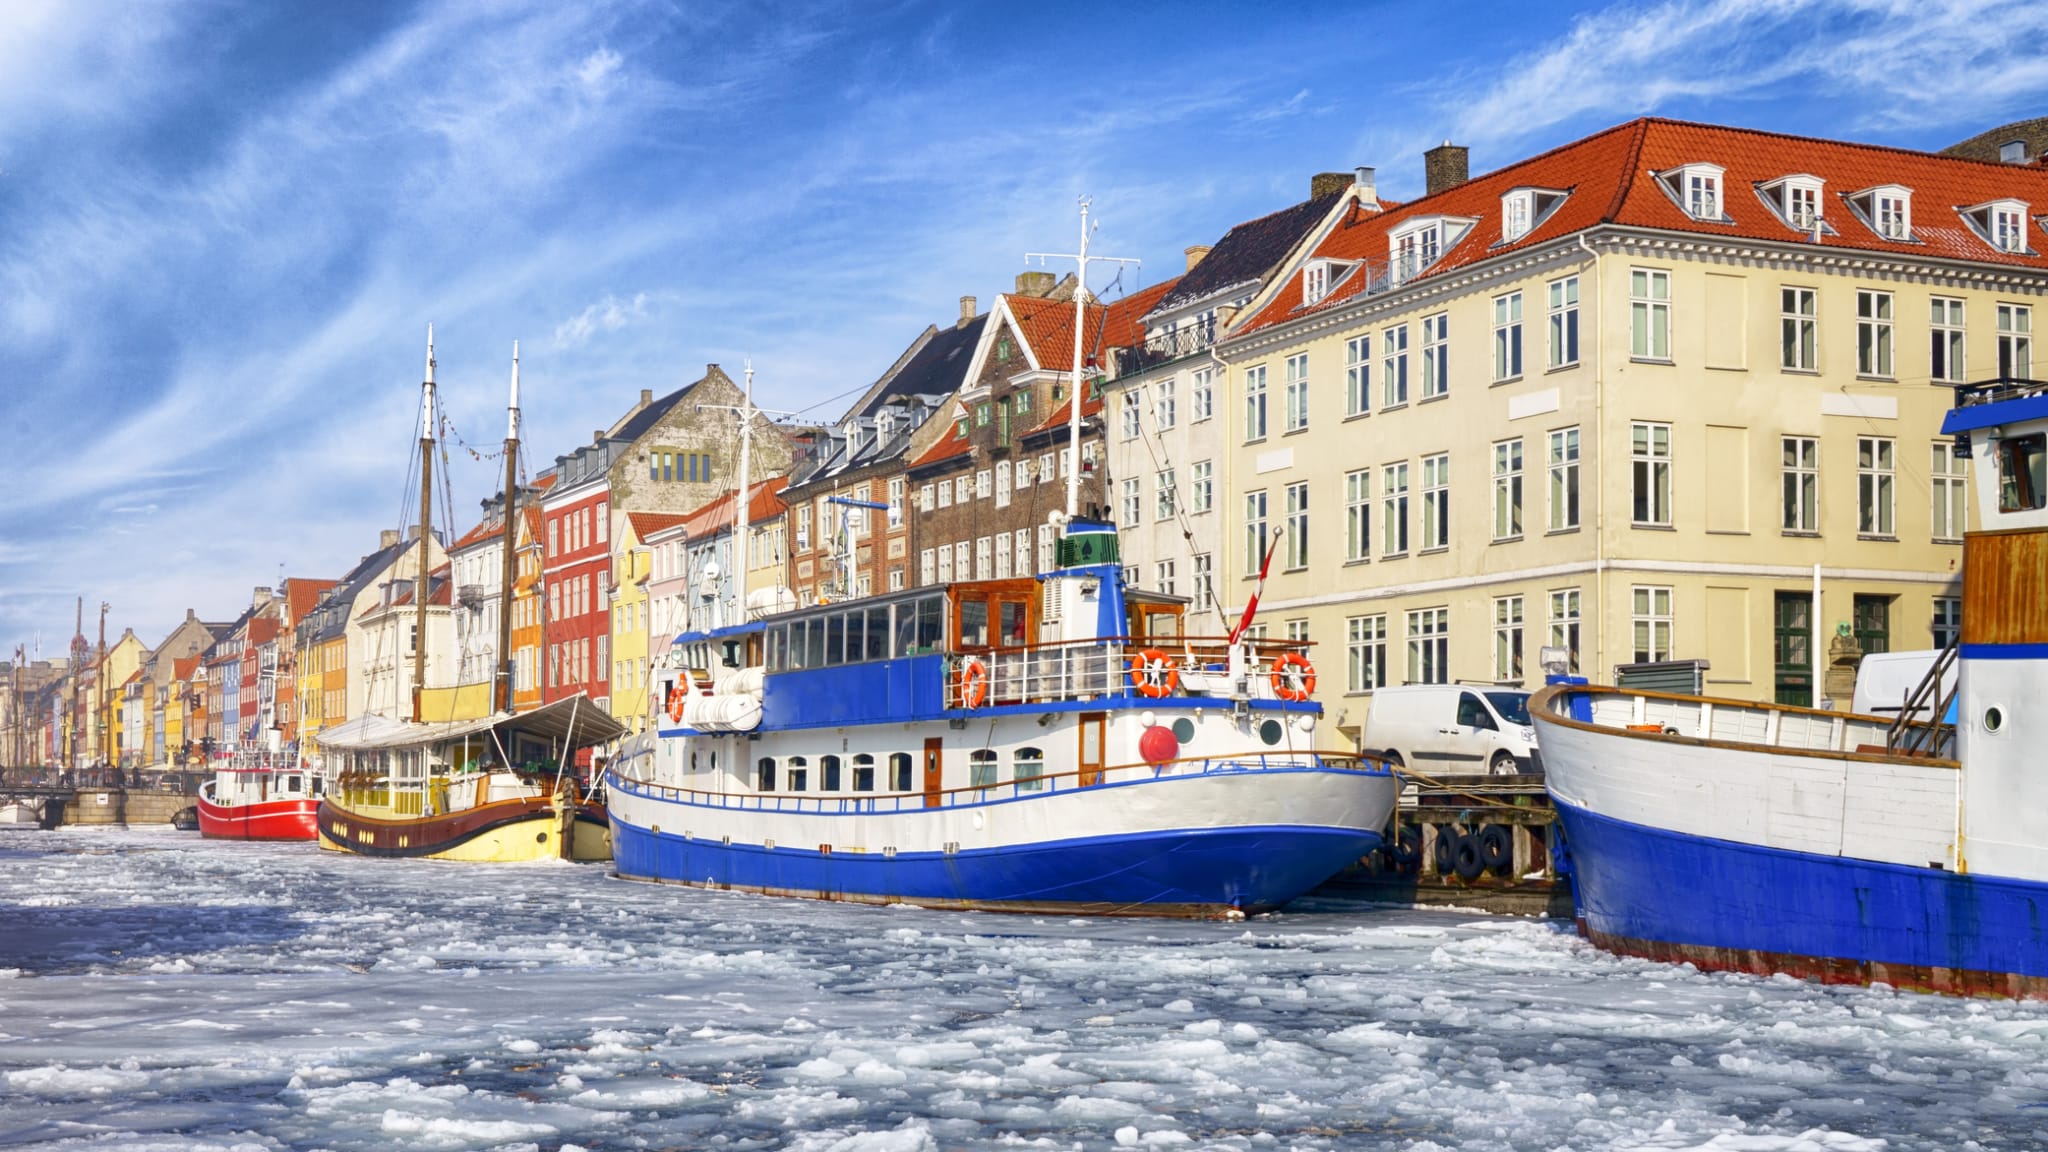 Winter in Kopenhagen © fmajor/iStock / Getty Images Plus via Getty Images